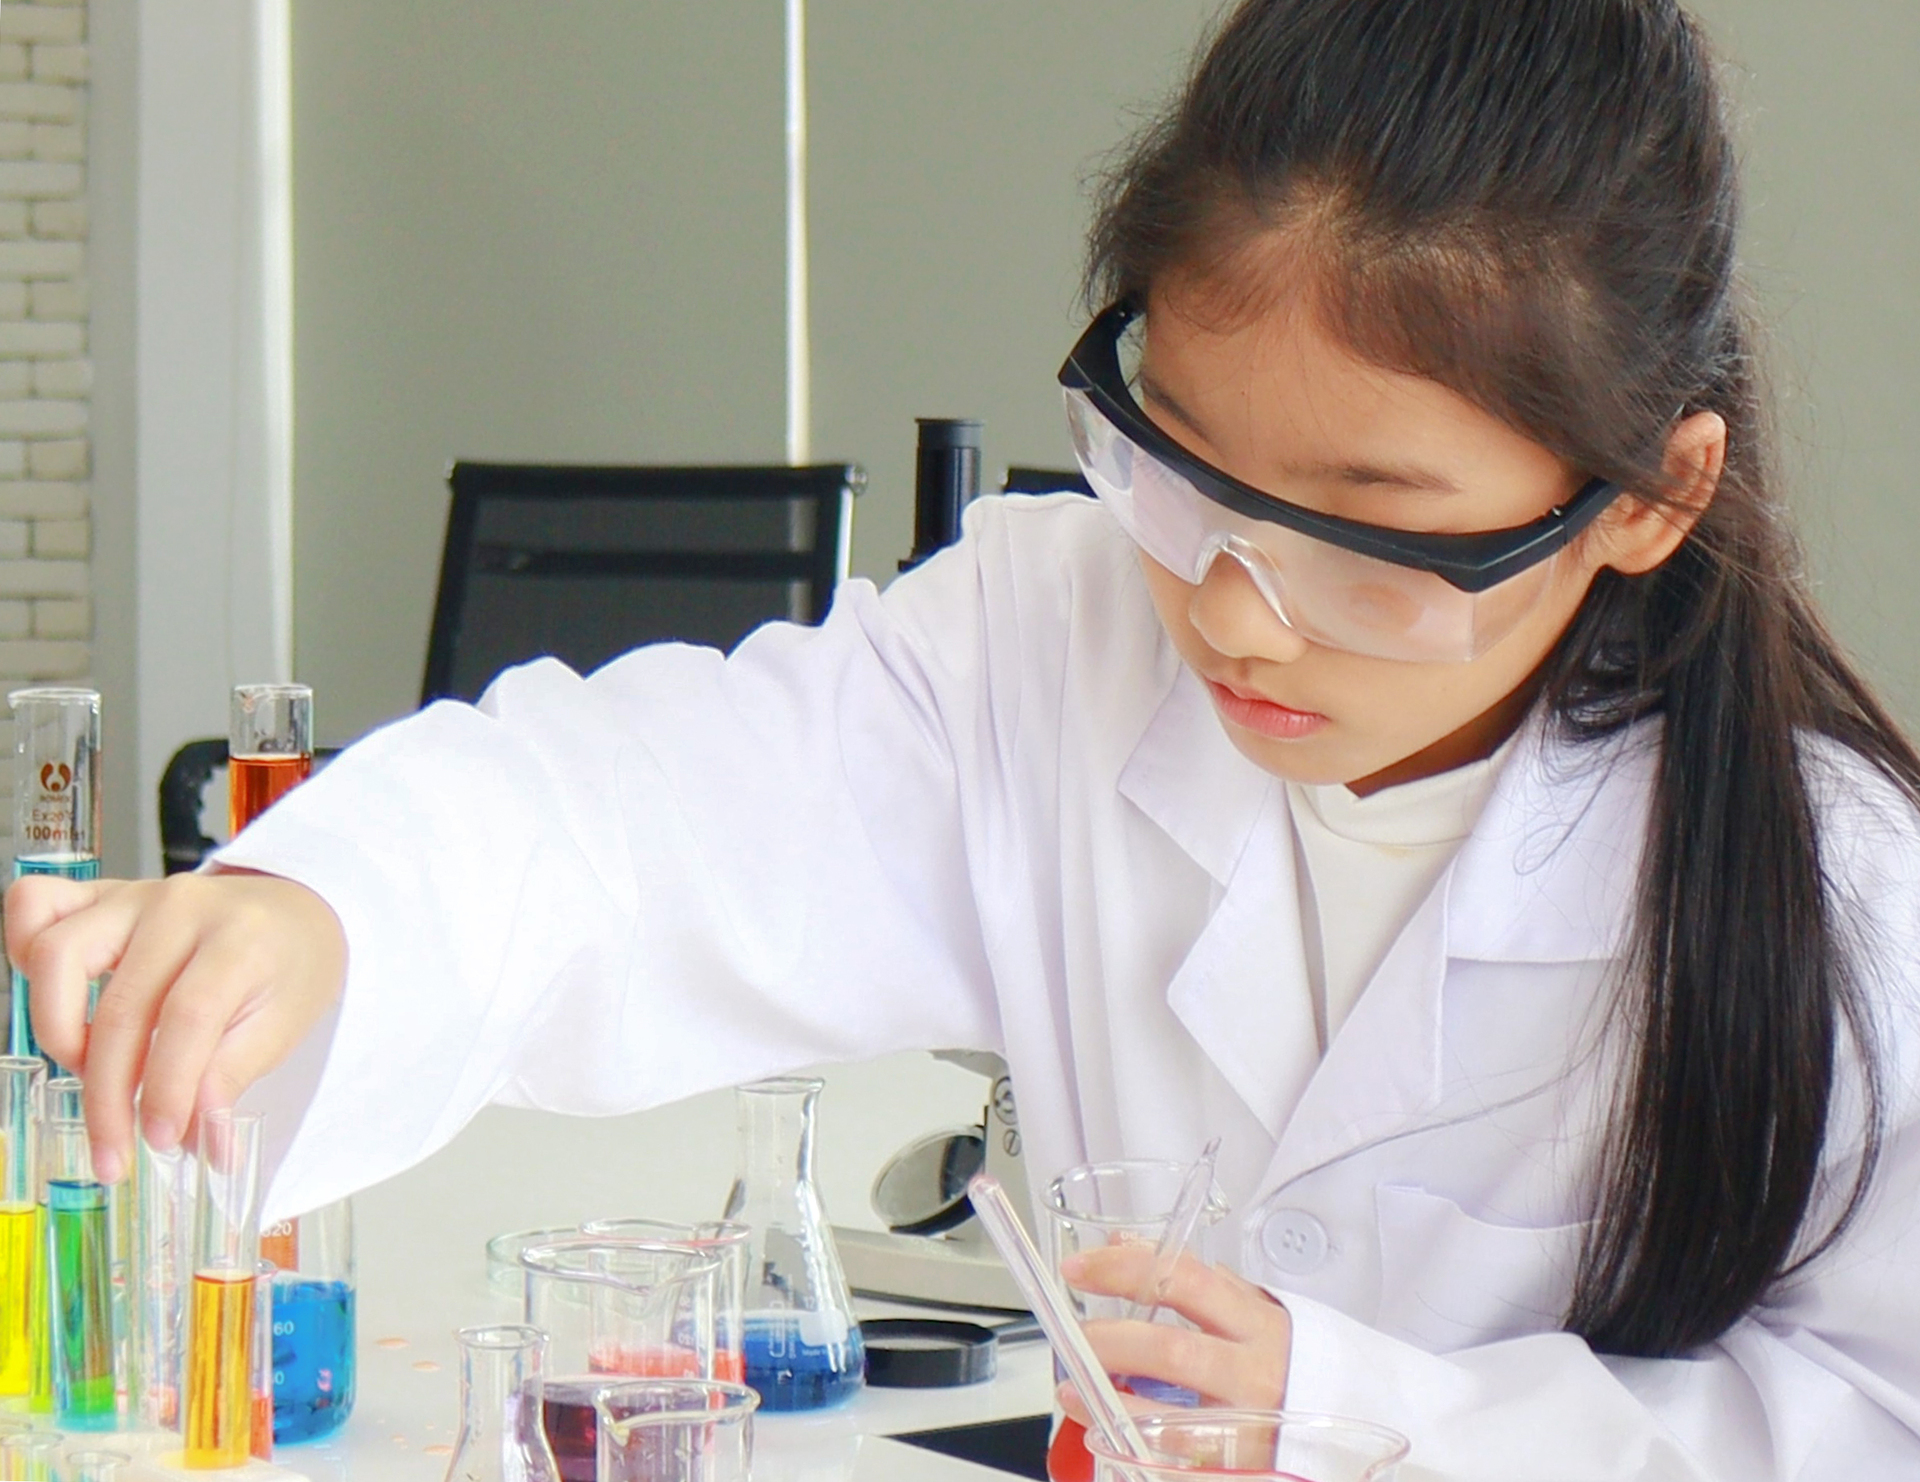 Na obrazku widać zainteresowaną nauką dziewczynkę, która bierze udział w zajęciach chemicznych. Jest to idealne rozwiązanie dla dzieci, które chcą poszerzać swoją wiedzę i zdobywać nowe umiejętności. Zajęcia chemiczne pozwalają na eksperymentowanie i odkrywanie fascynującego świata nauki. Obrazek przedstawia aktywną uczestniczkę zajęć, która z pełnym zaangażowaniem pochłonięta jest swoimi badaniami. To znakomita inspiracja dla wszystkich, którzy chcą rozwijać swoją pasję do nauki i odkrywać nowe obszary wiedzy.